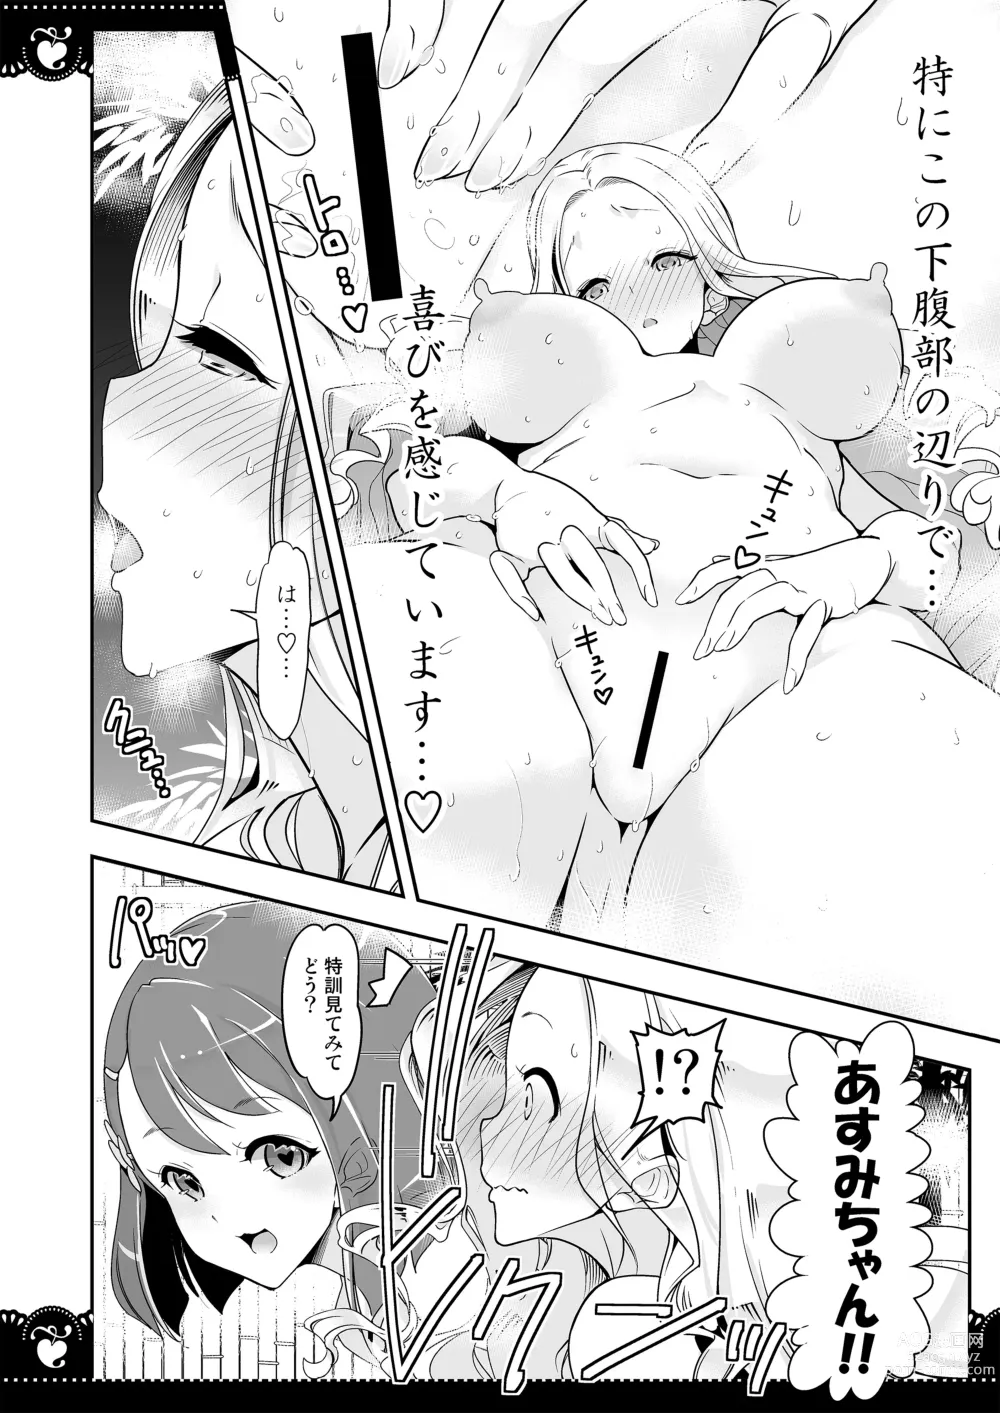 Page 7 of doujinshi Onsen Ryokan de 4P Yuri Healing